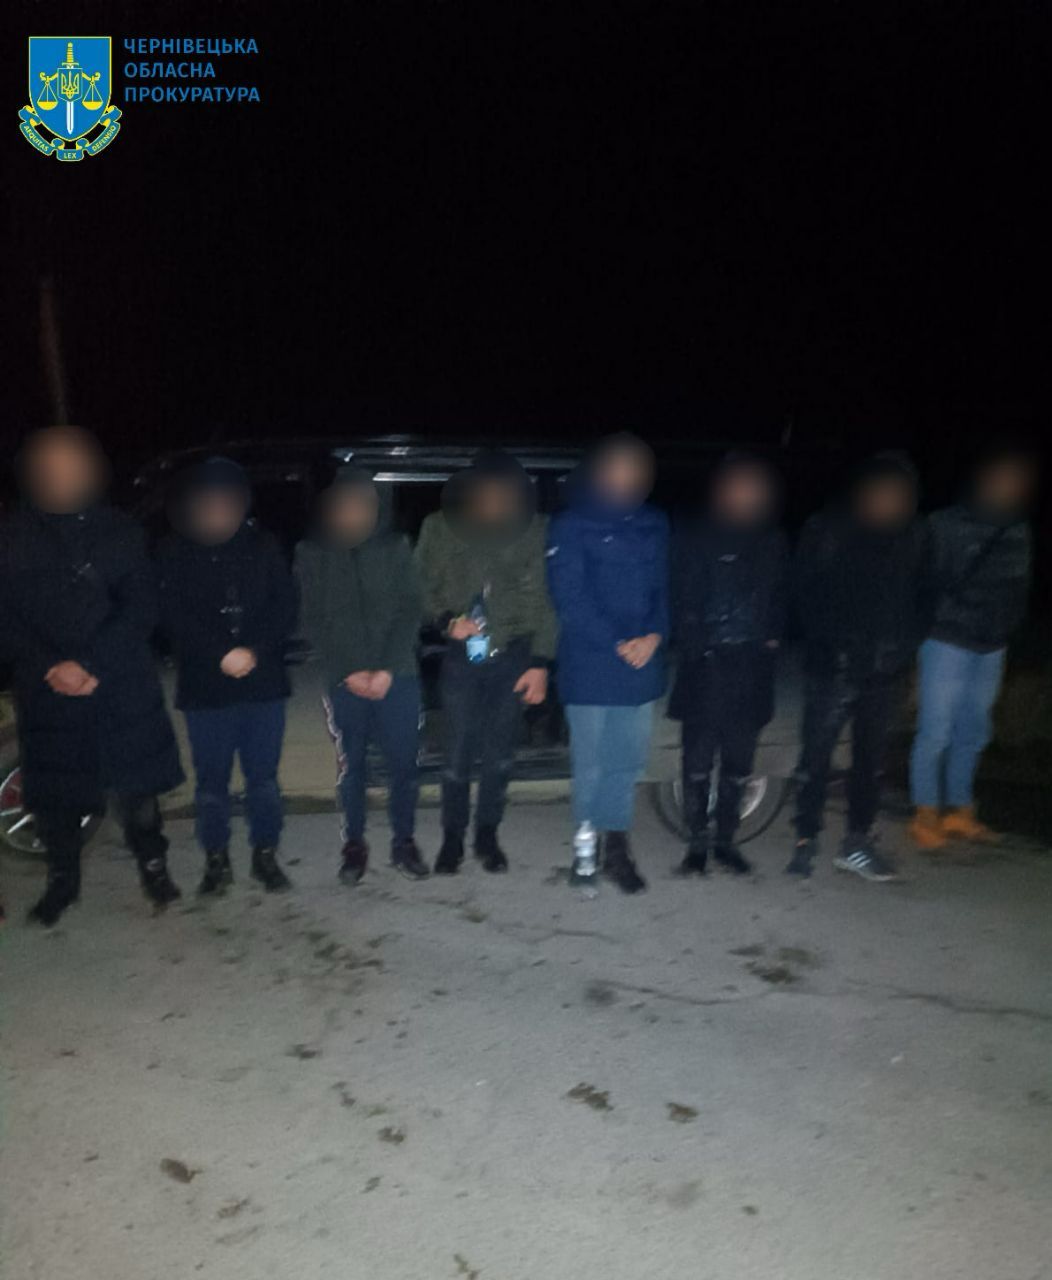 Повідомлено про підозру жителю Буковини, який намагався переправити до Молдови 11 чоловіків призовного віку